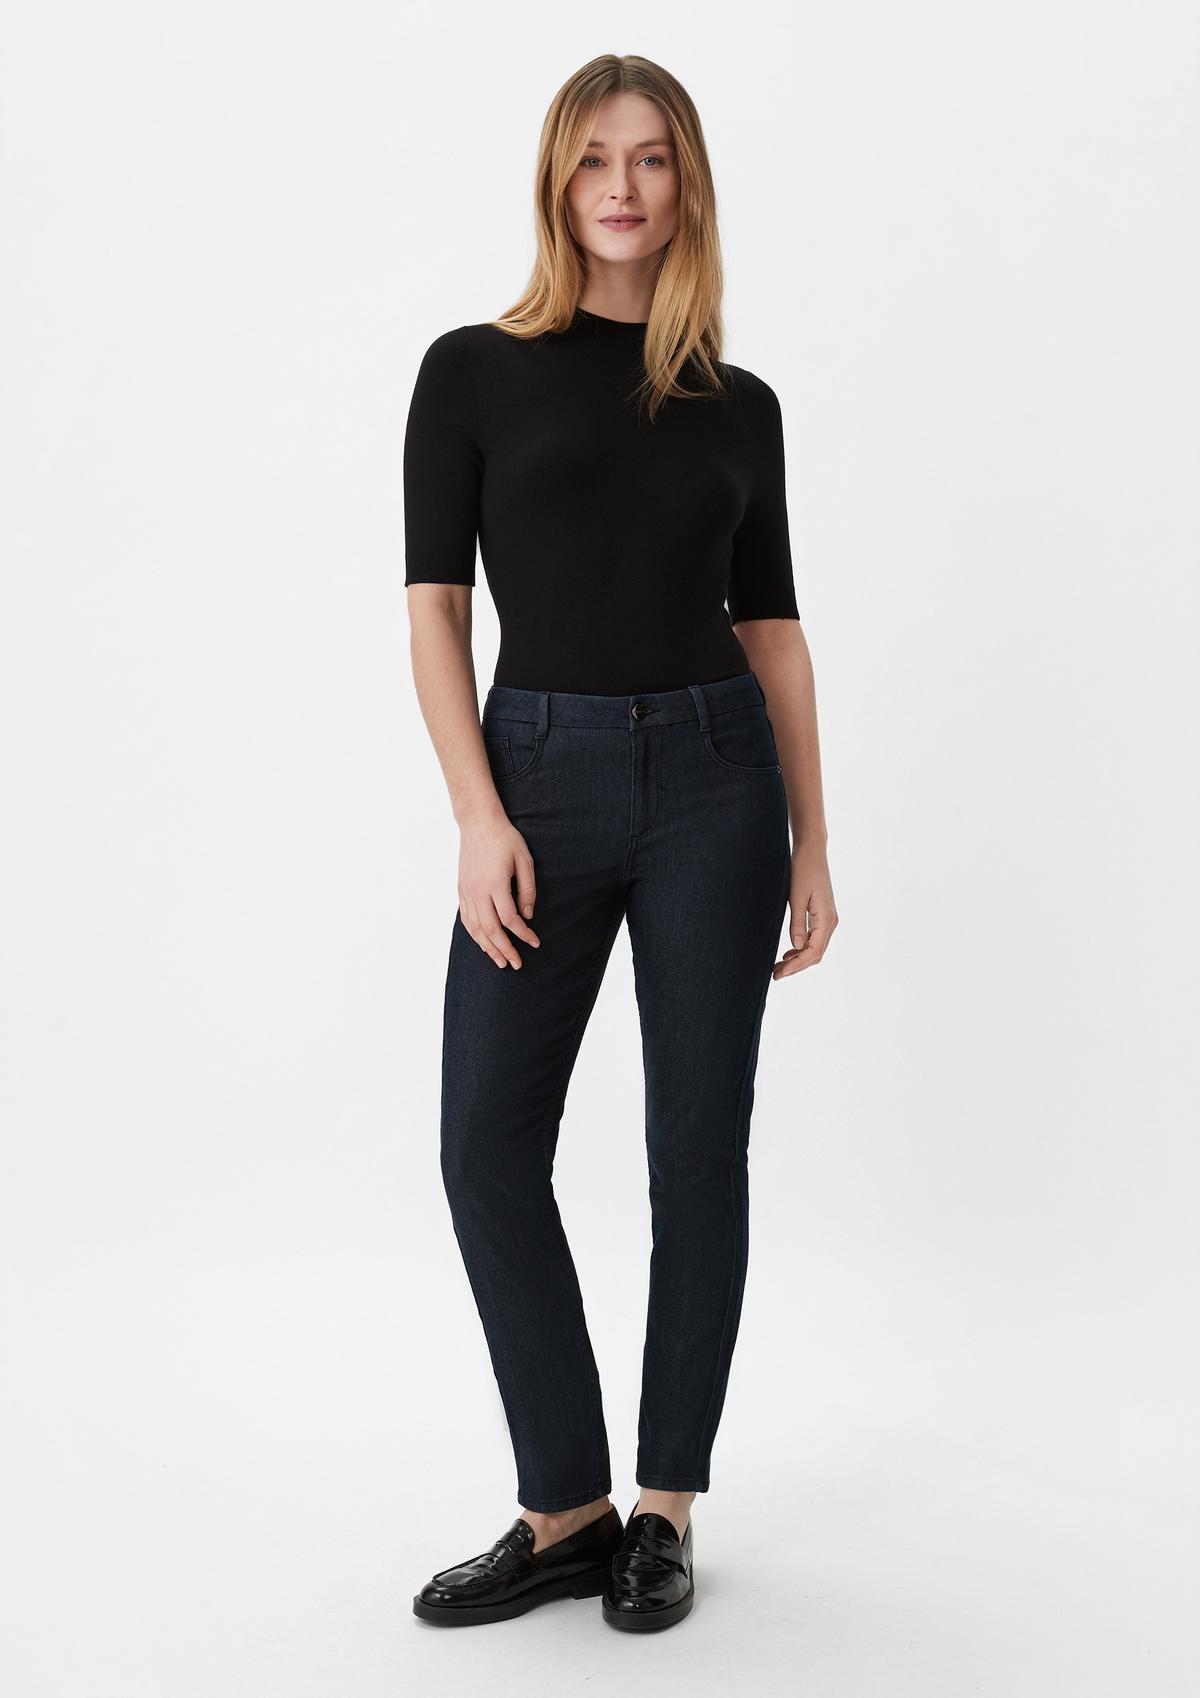 Jeans-Styles für Damen | Comma